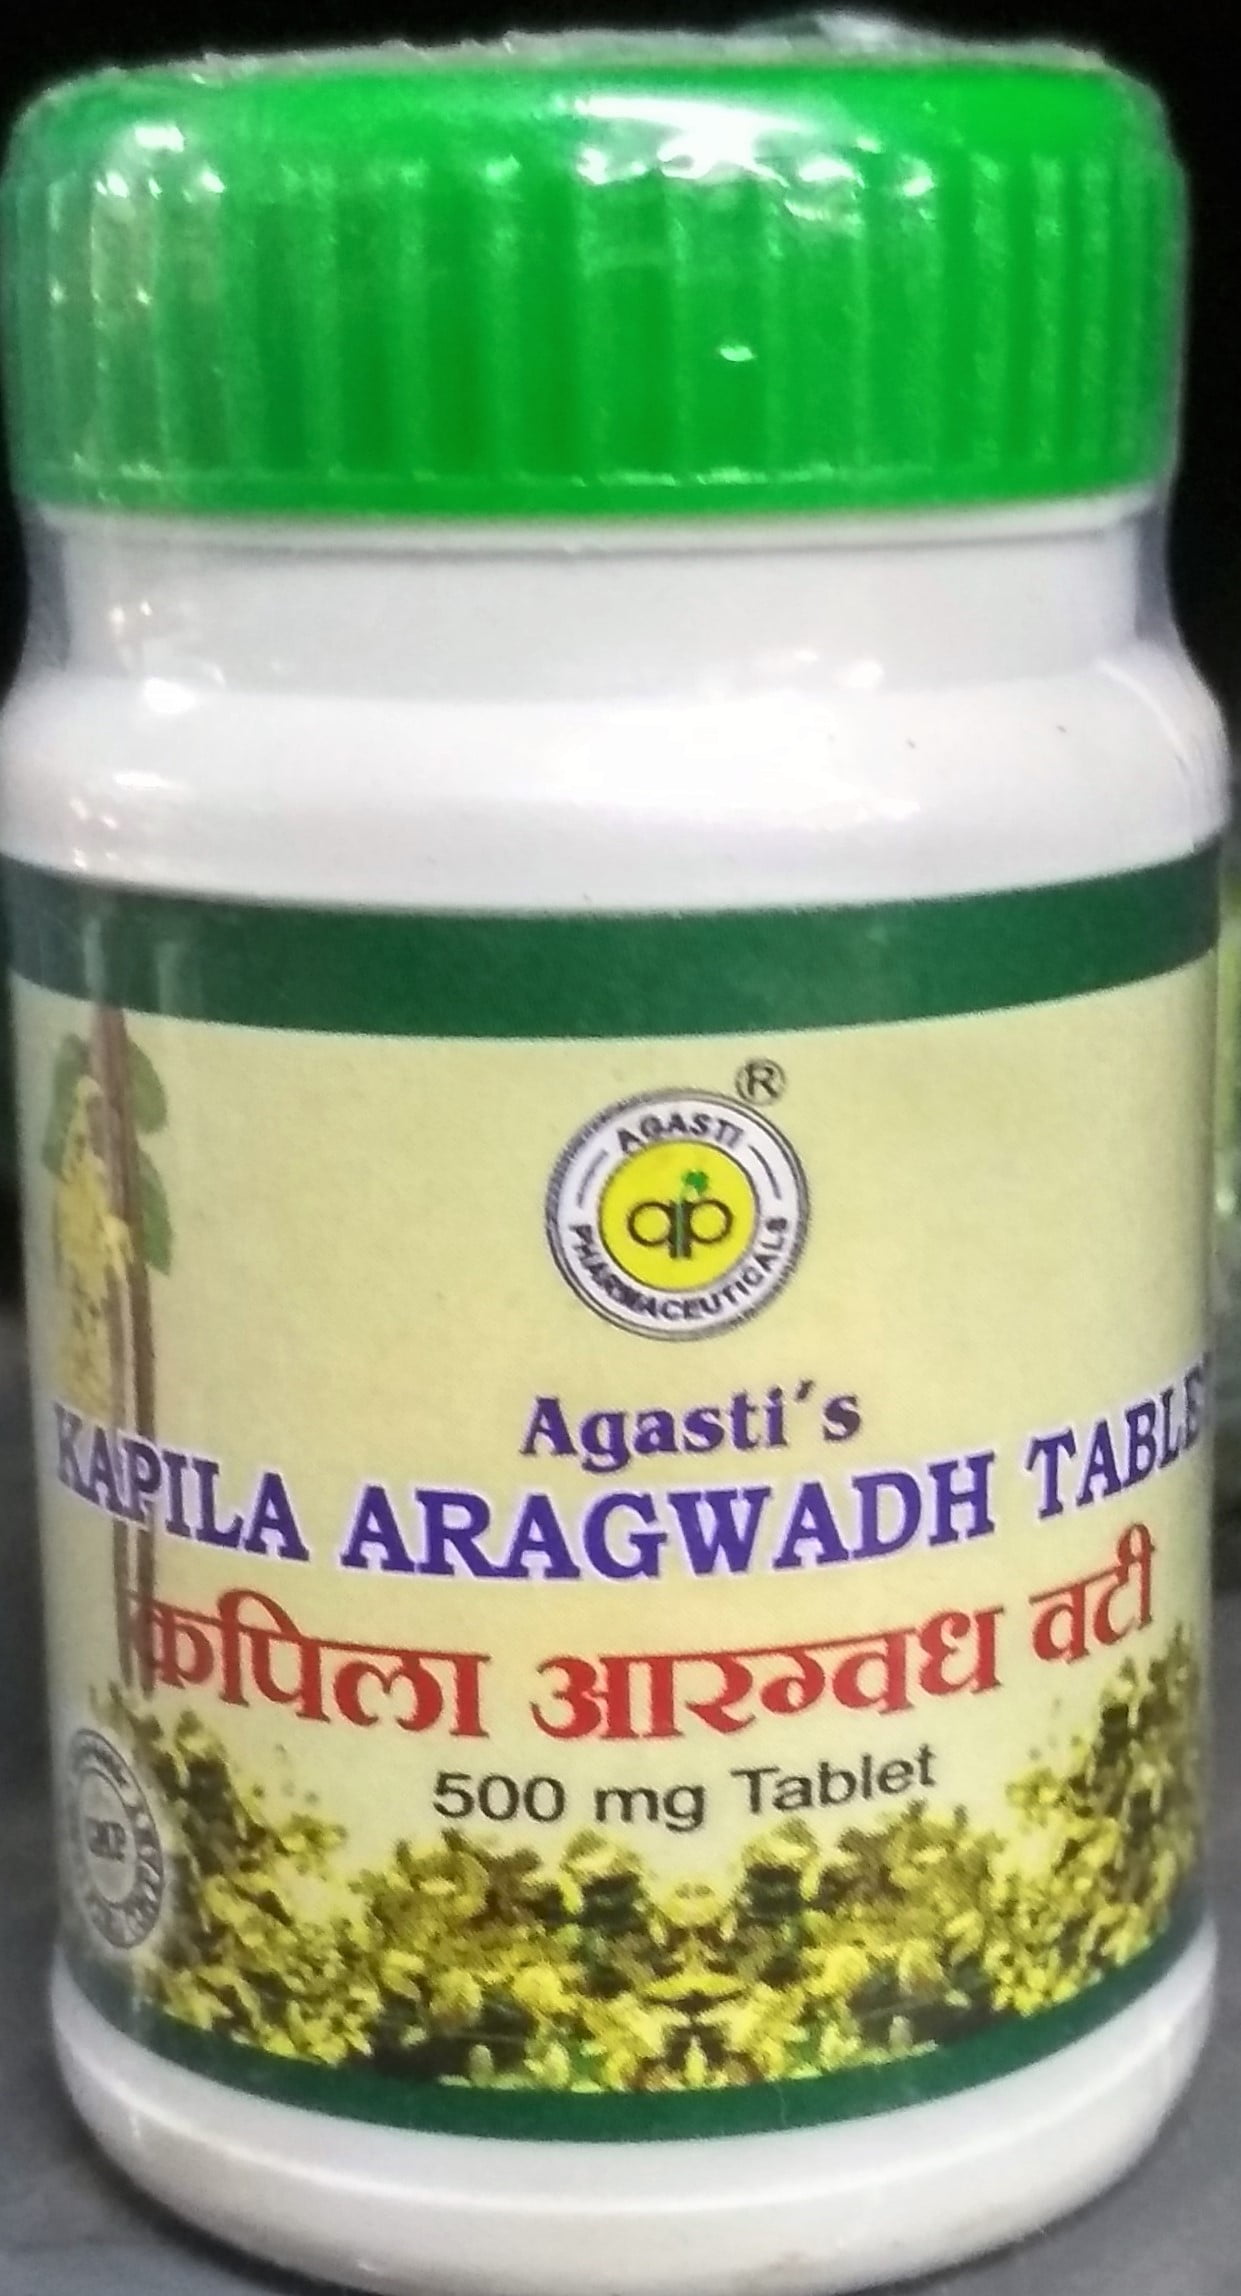 kapila aragwadh vati 2 kg 4000 tablet upto 15% off agasti pharmaceuticals